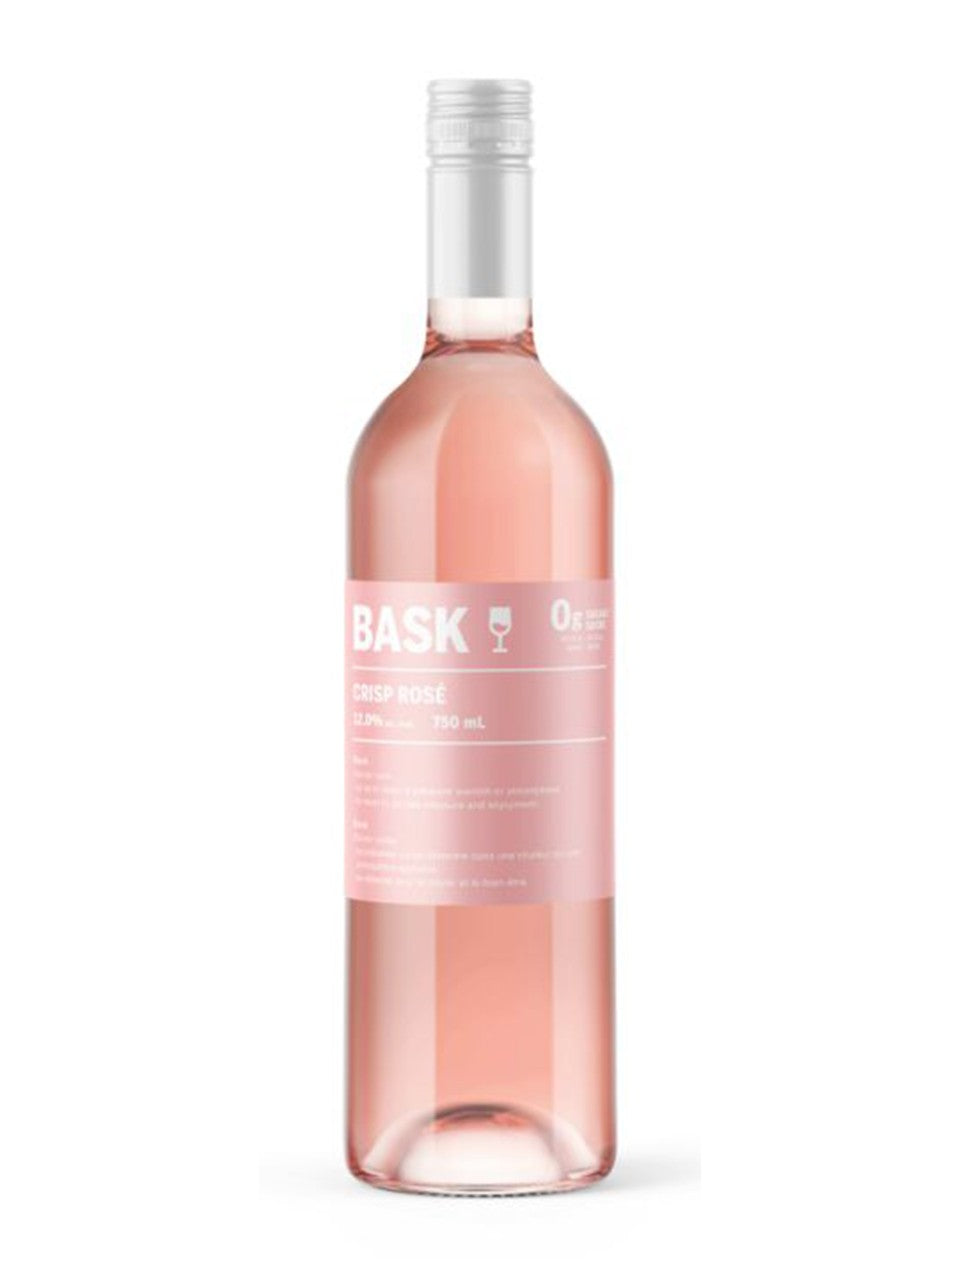 Bask Crisp Rosé 750 ml bottle